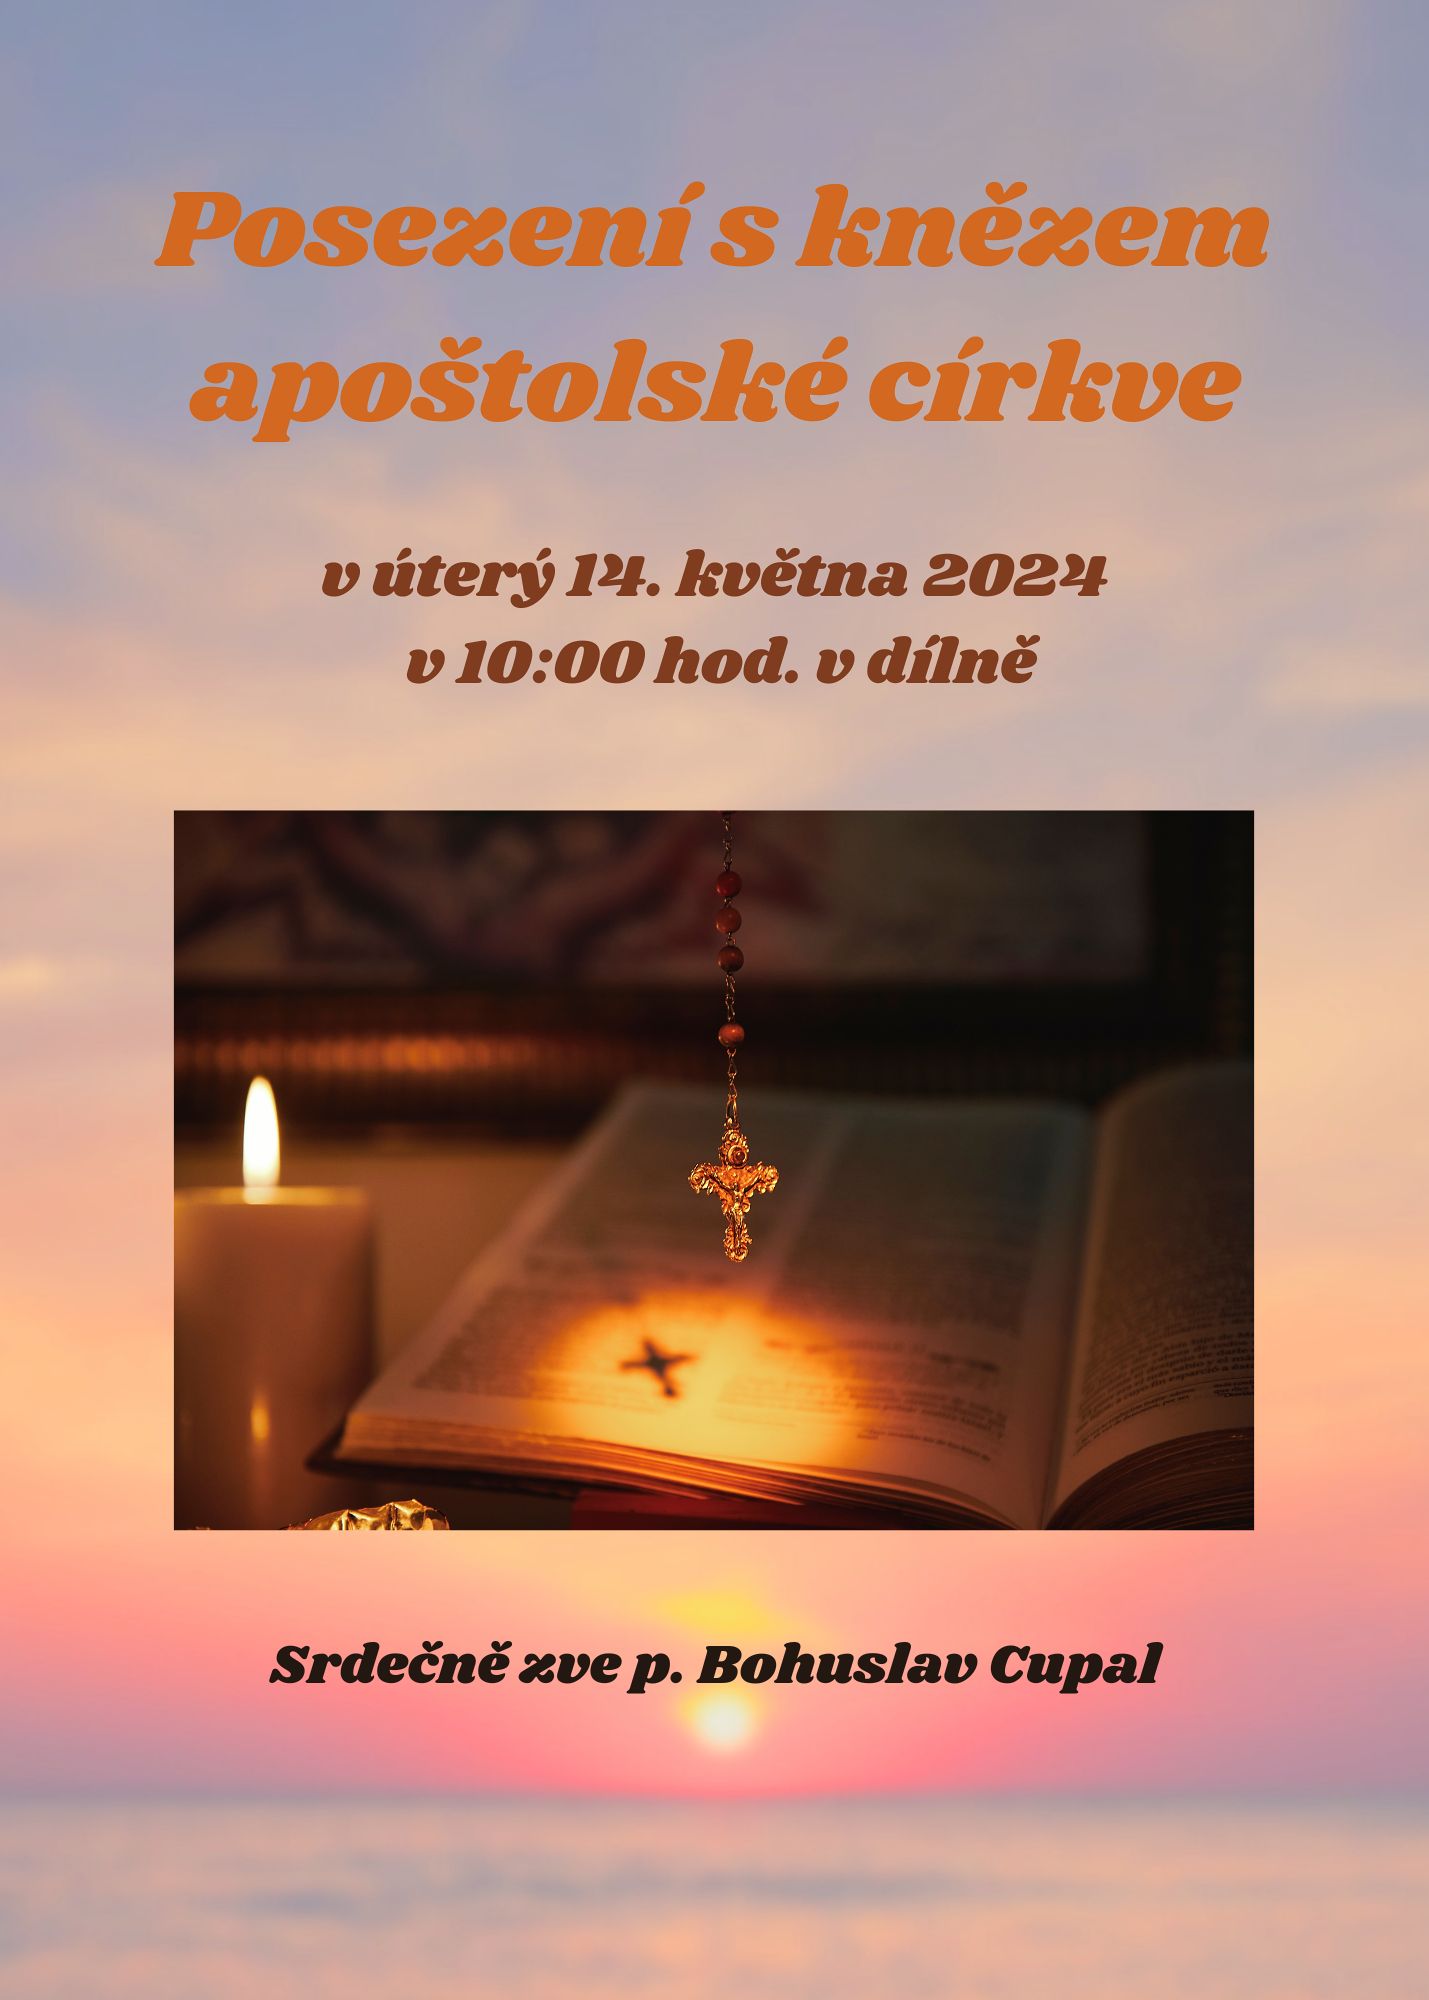 Posezeni-s-knezem-apostolske-cirkve-14-kvetna-2024-1.jpg